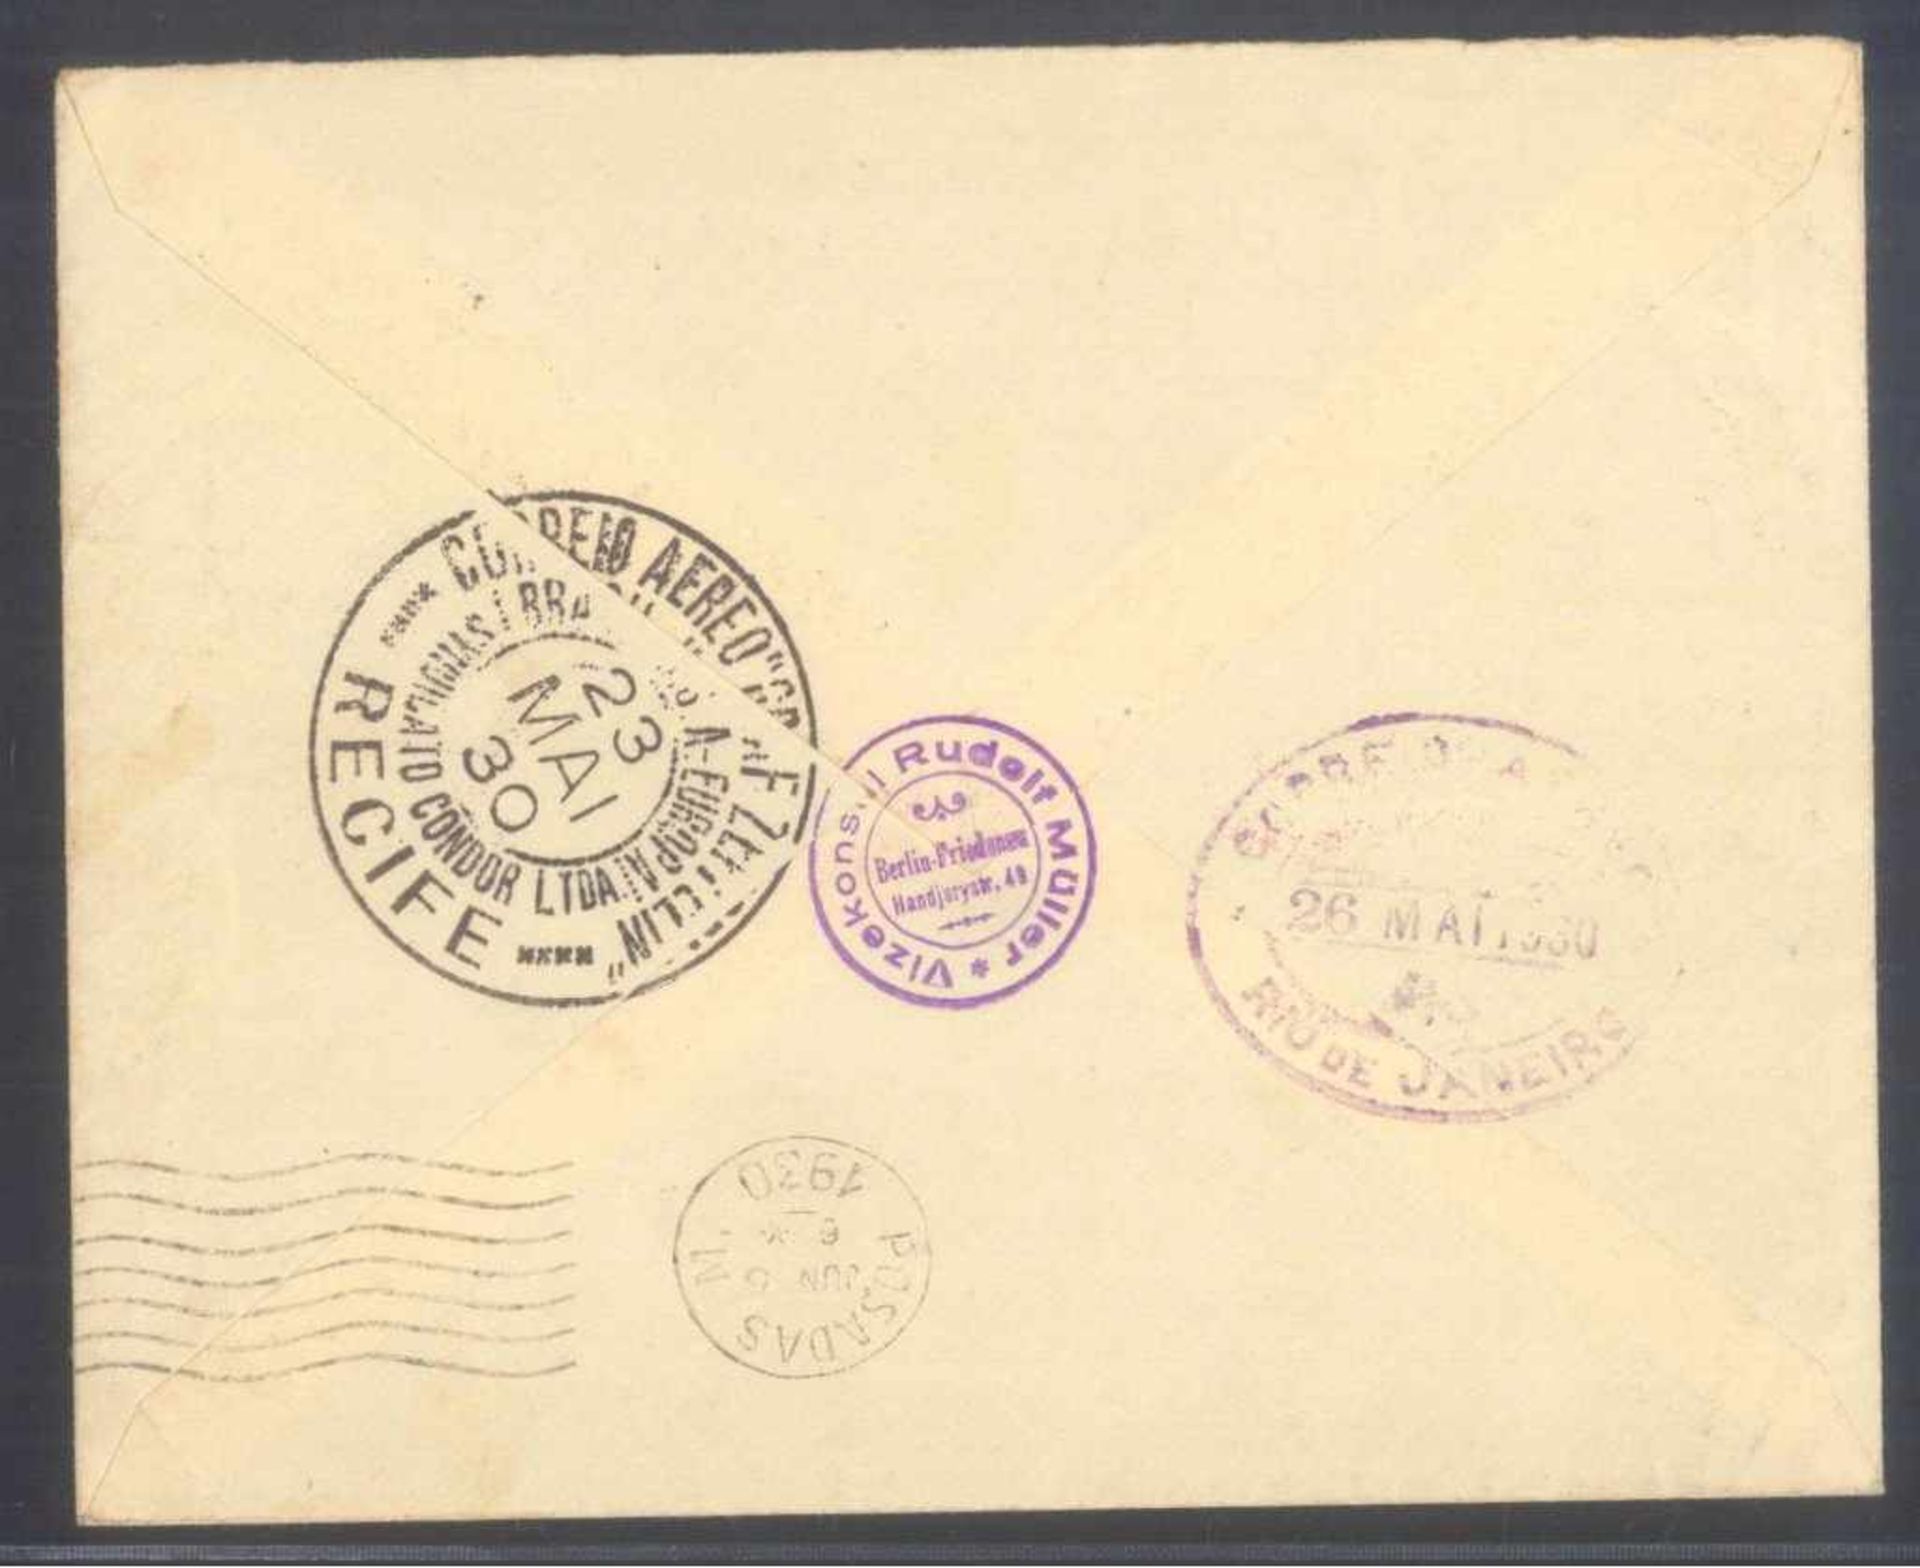 DEUTSCHES REICH 1930, ZEPPELIN SÜDAMERIKA-FAHRTMichelnummern 438 und 439 auf Luftpostbrief - Image 2 of 2